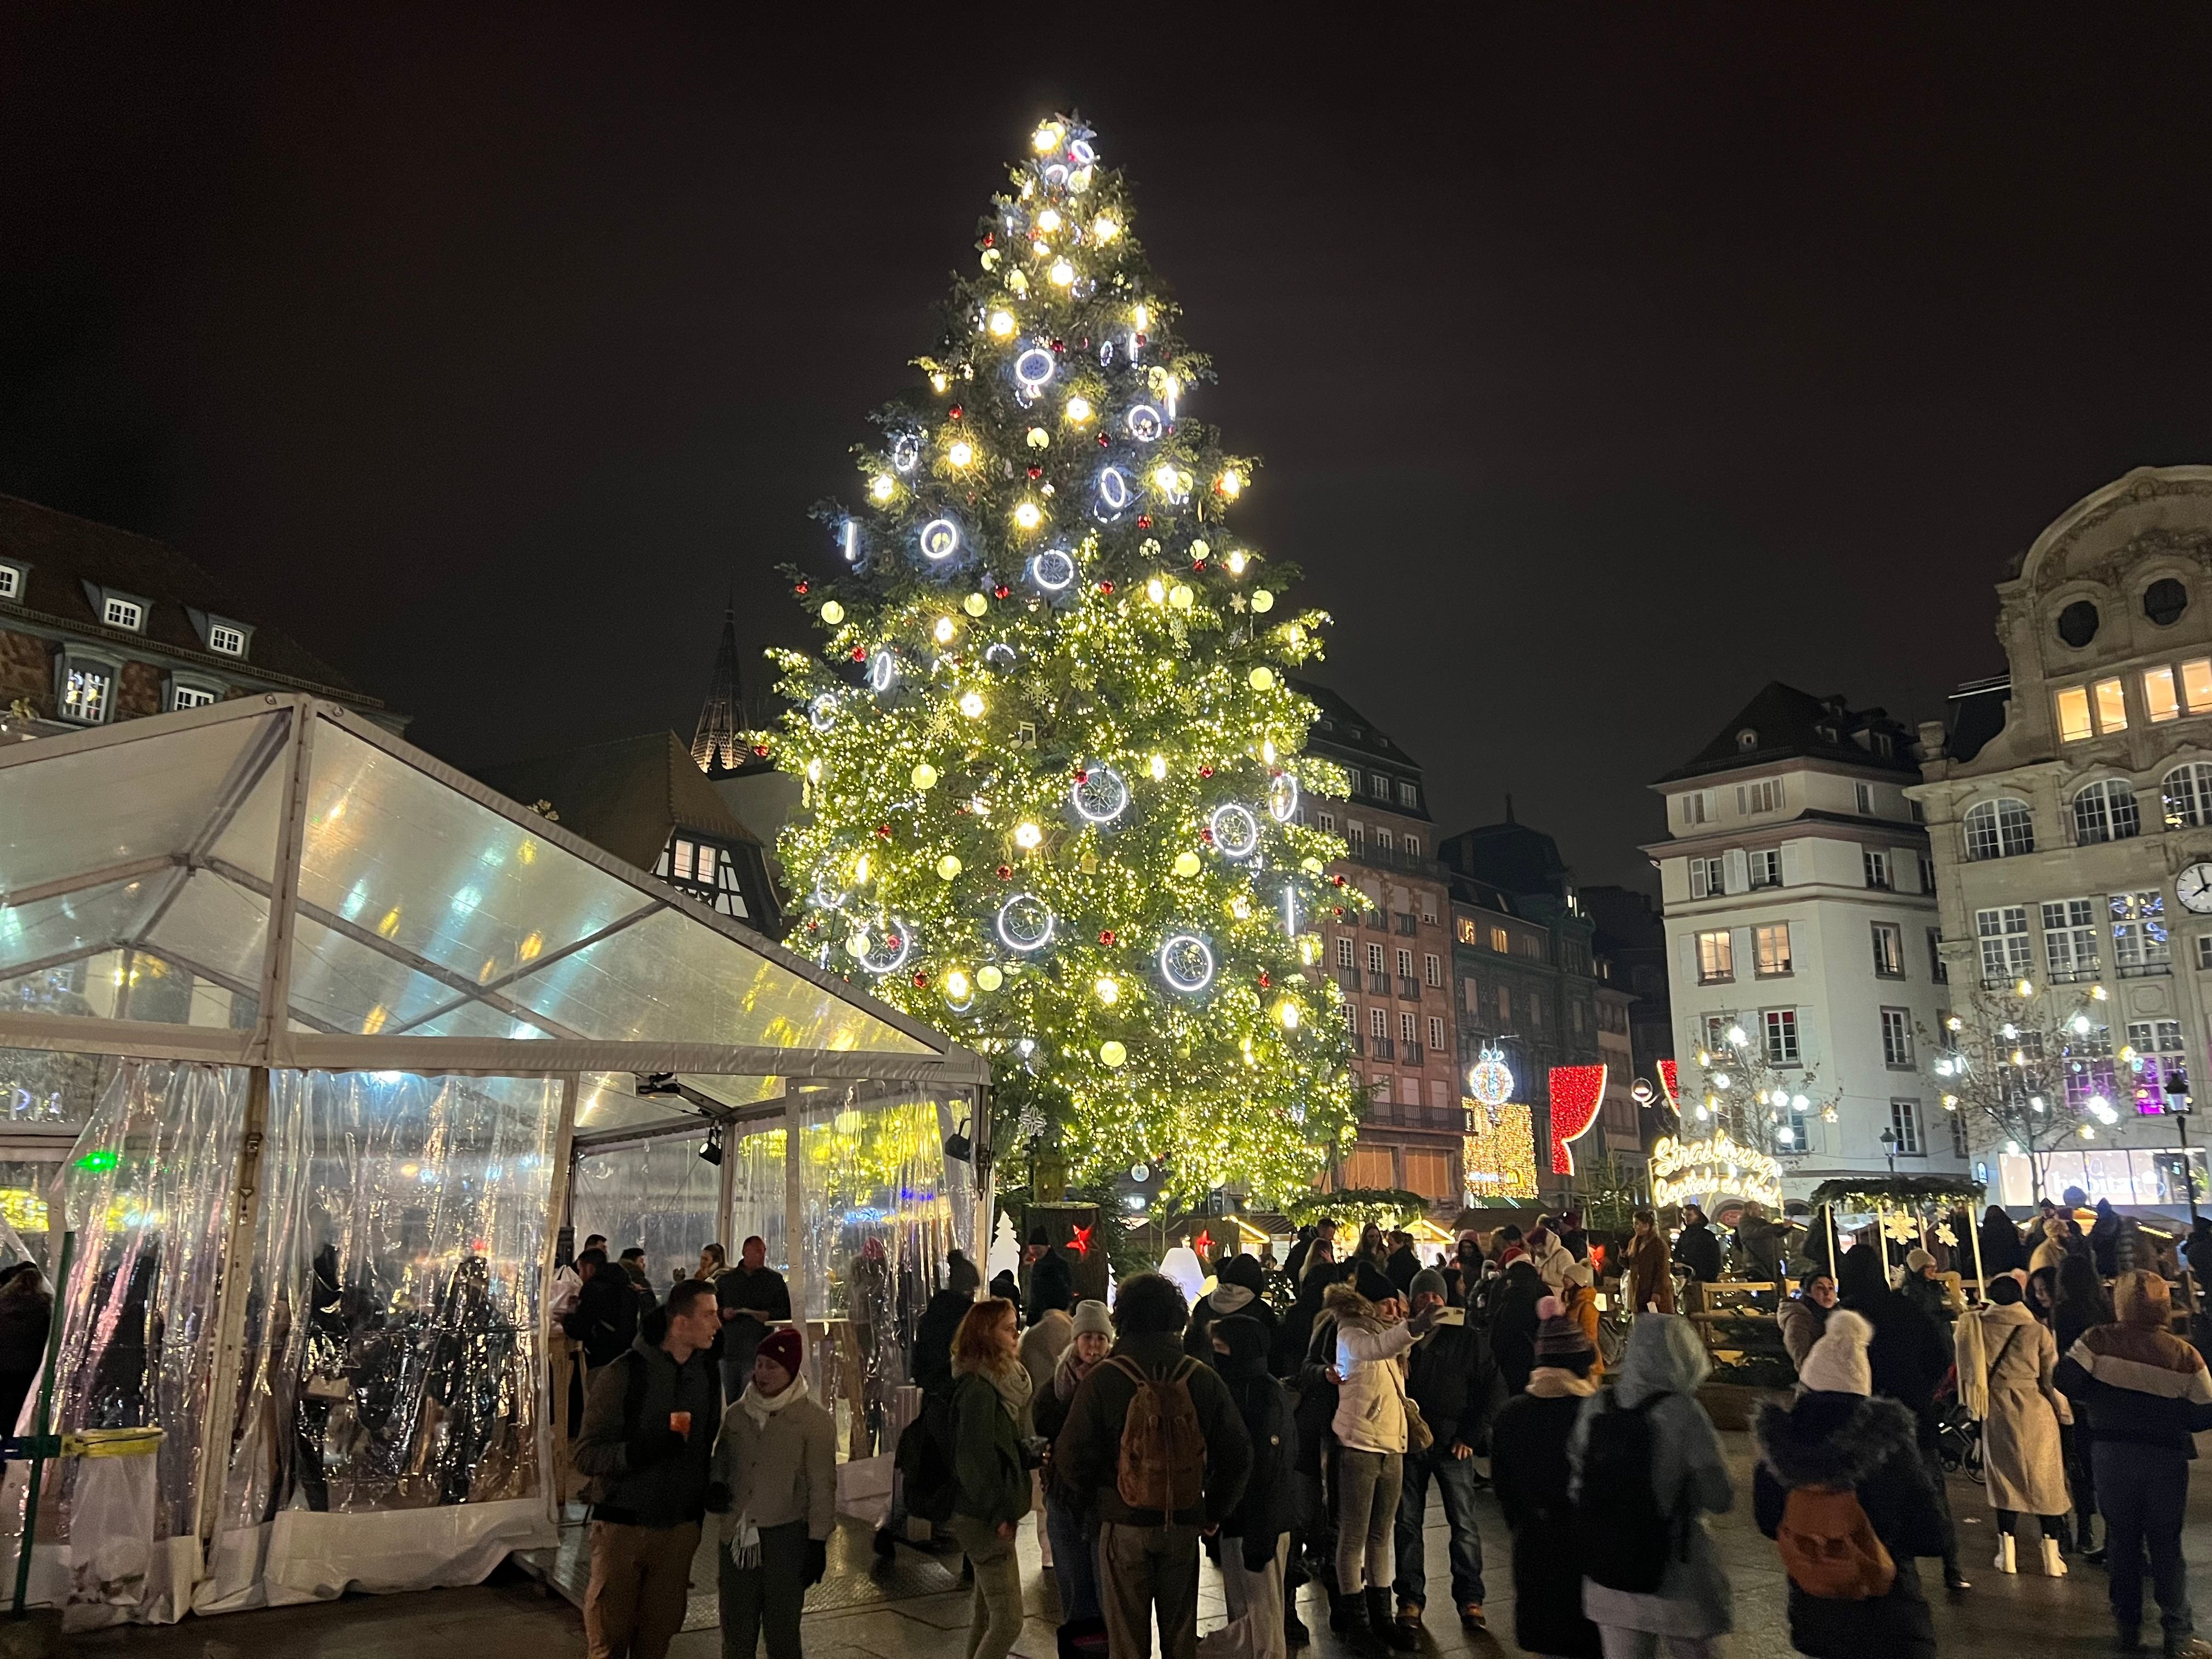 Marché de Noël à Strasbourg - Noël à Strasbourg